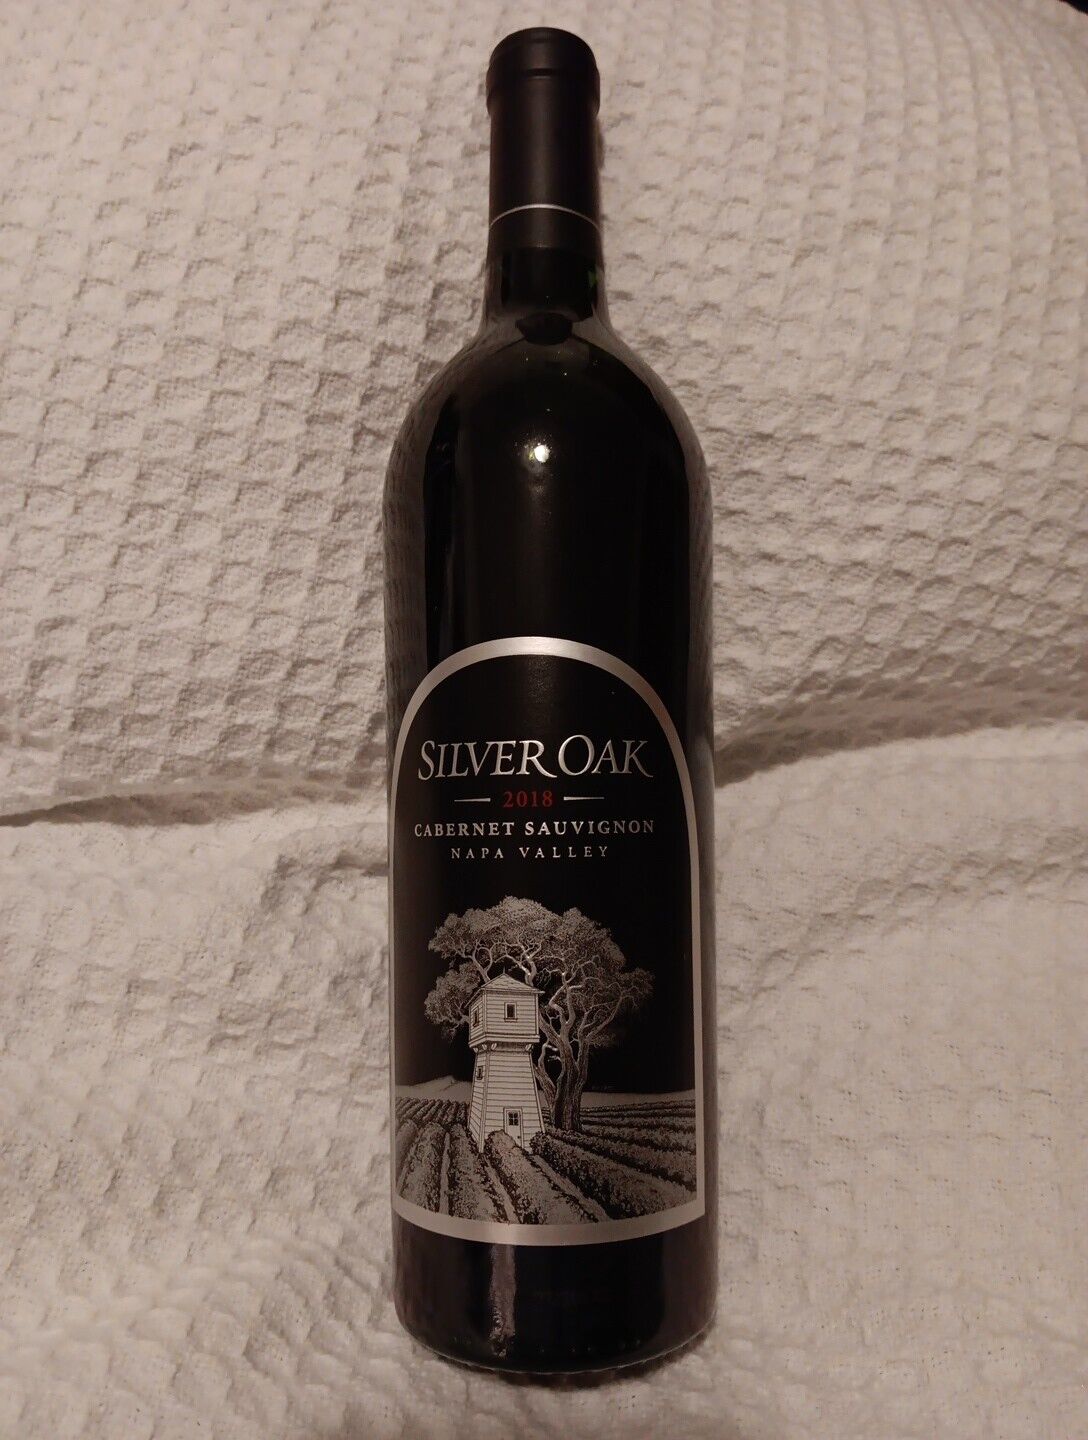 Silver Oak 2018 Napa Valley Cabernet Sauvignon Wine